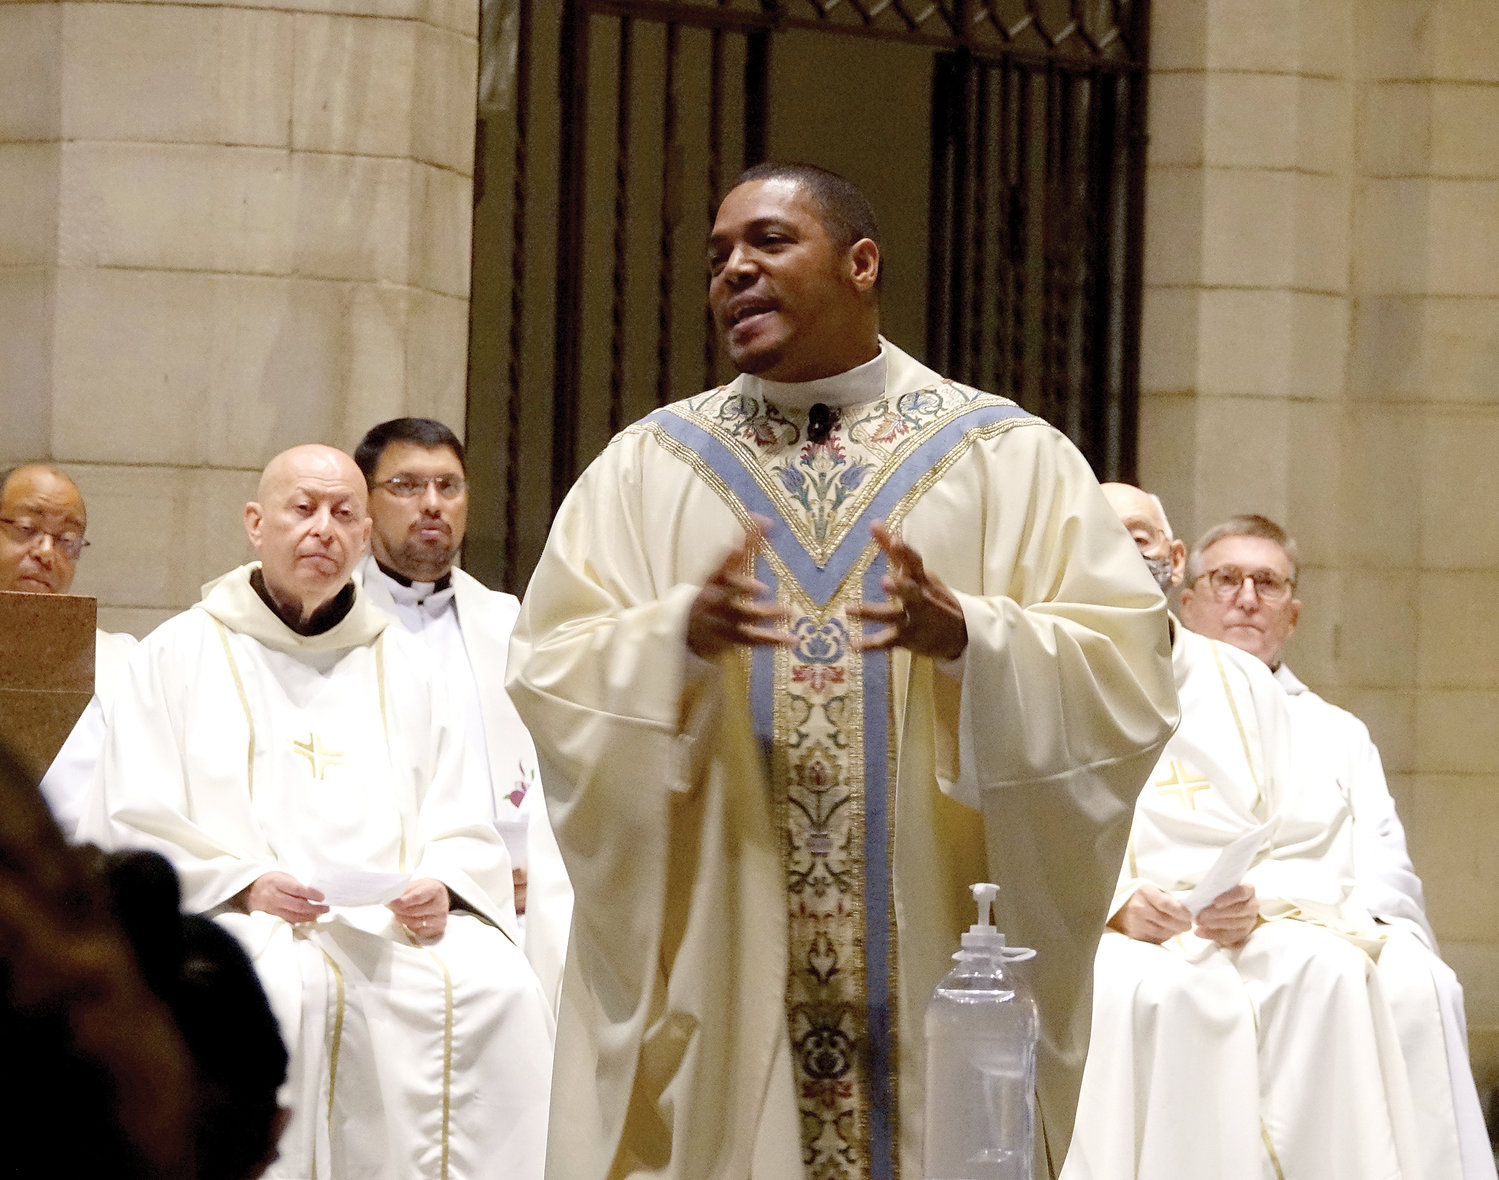 El padre Contreras predica su homilía con otros sacerdotes detrás de él.